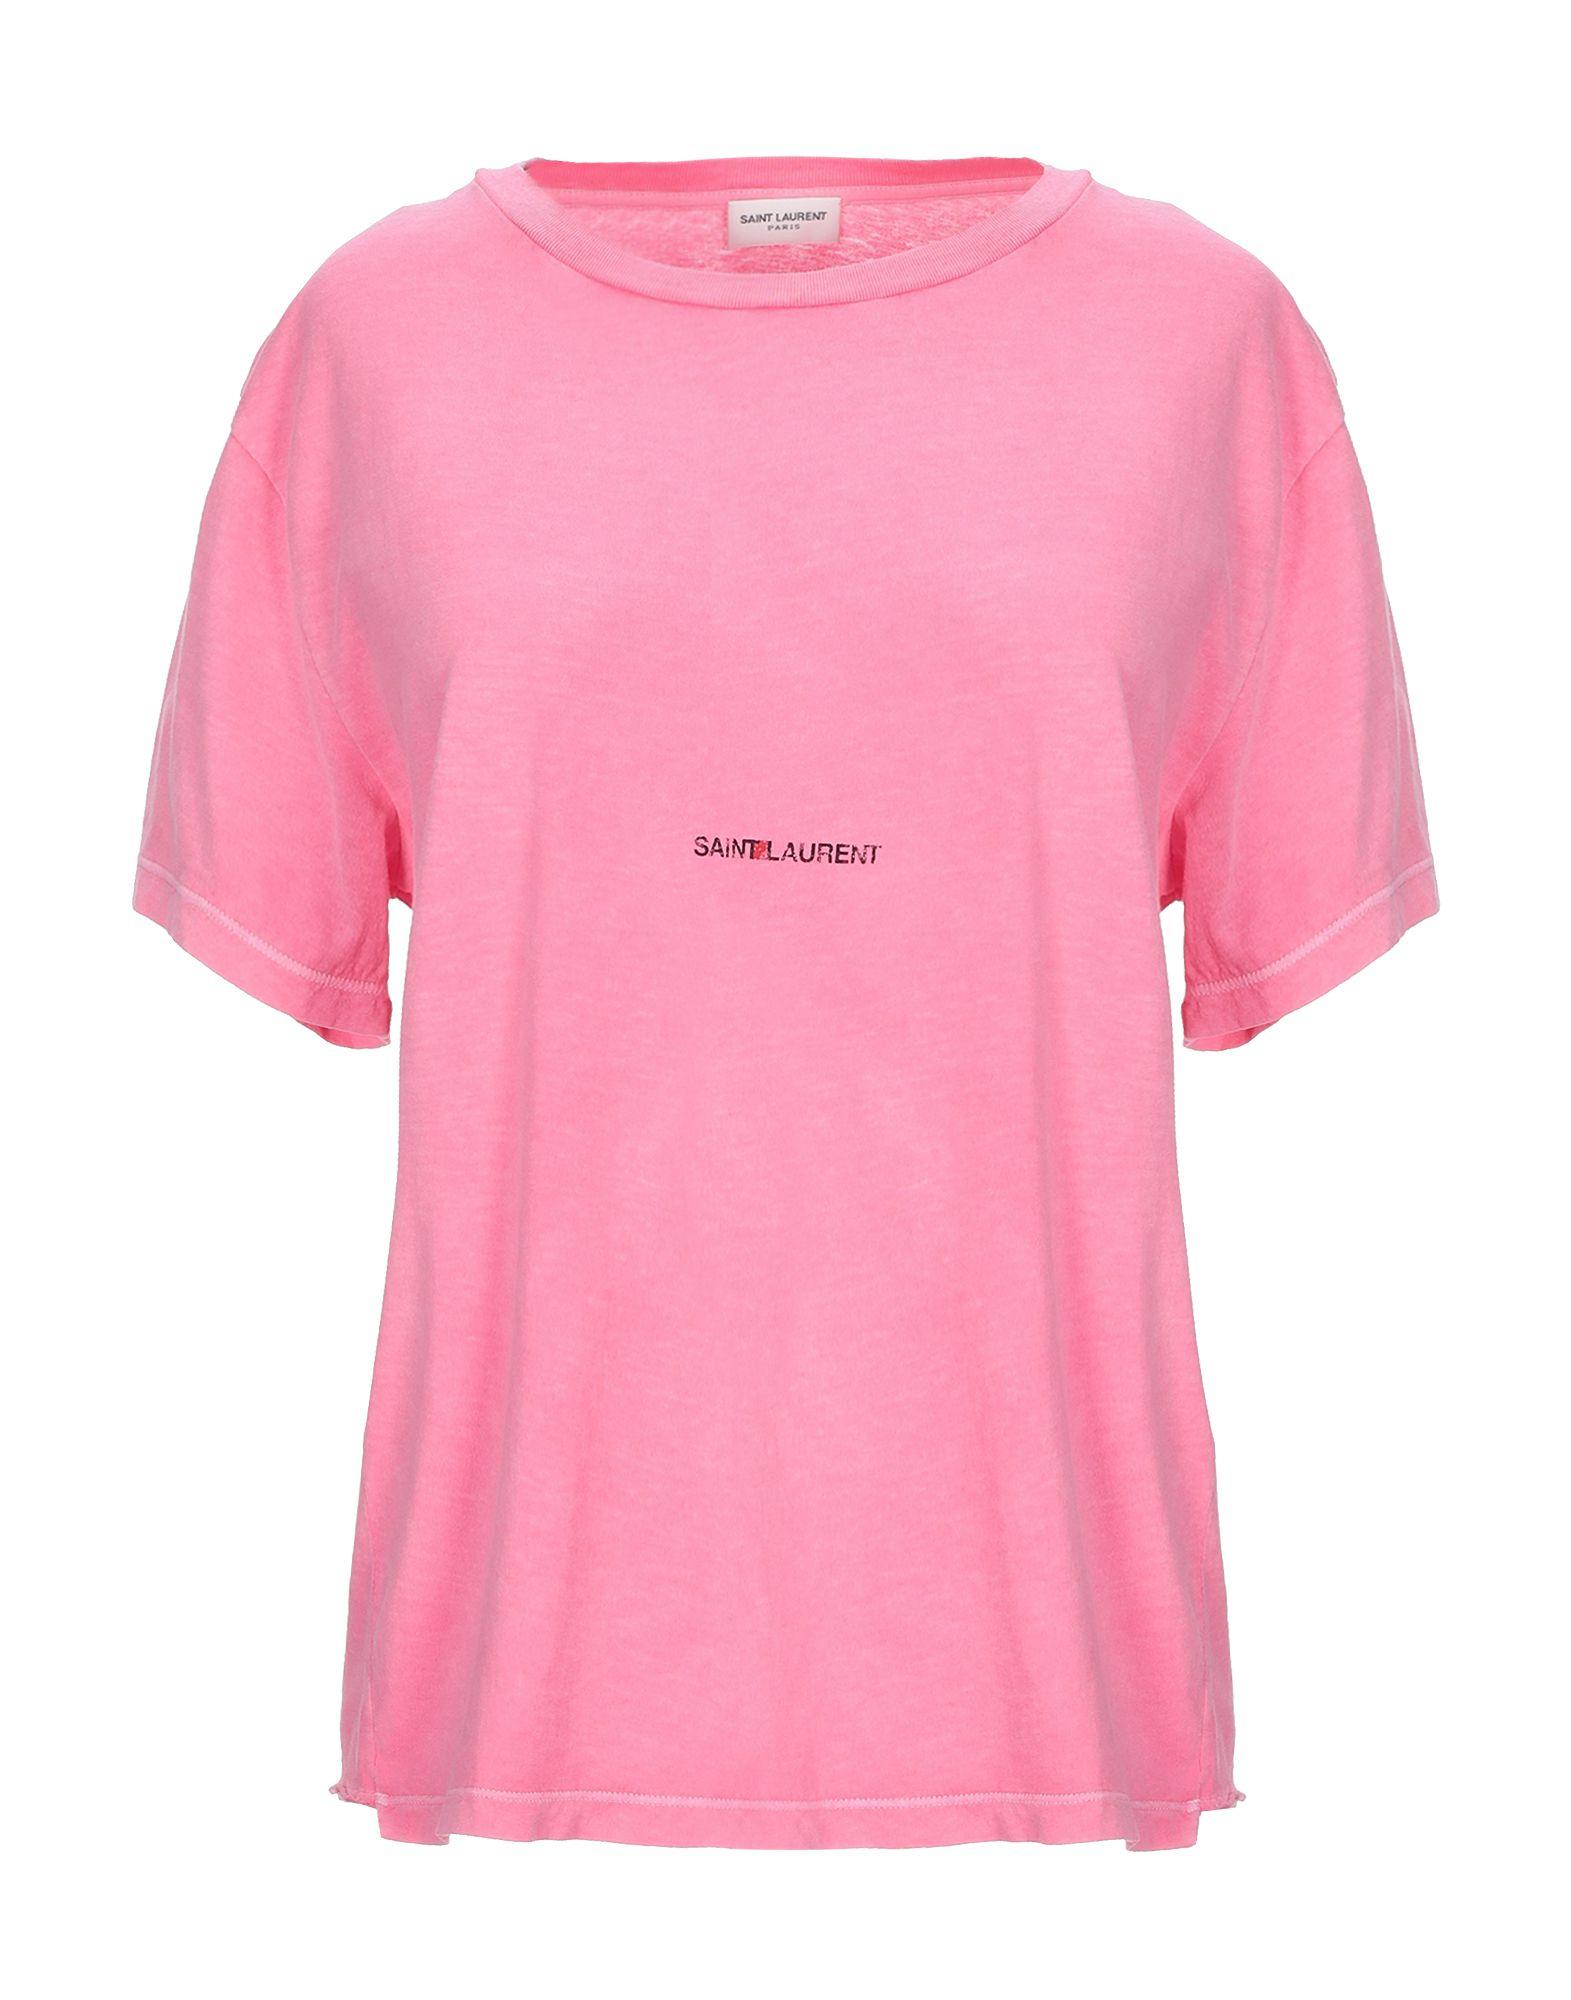 Saint Laurent Cotton T-shirt in Pink - Lyst